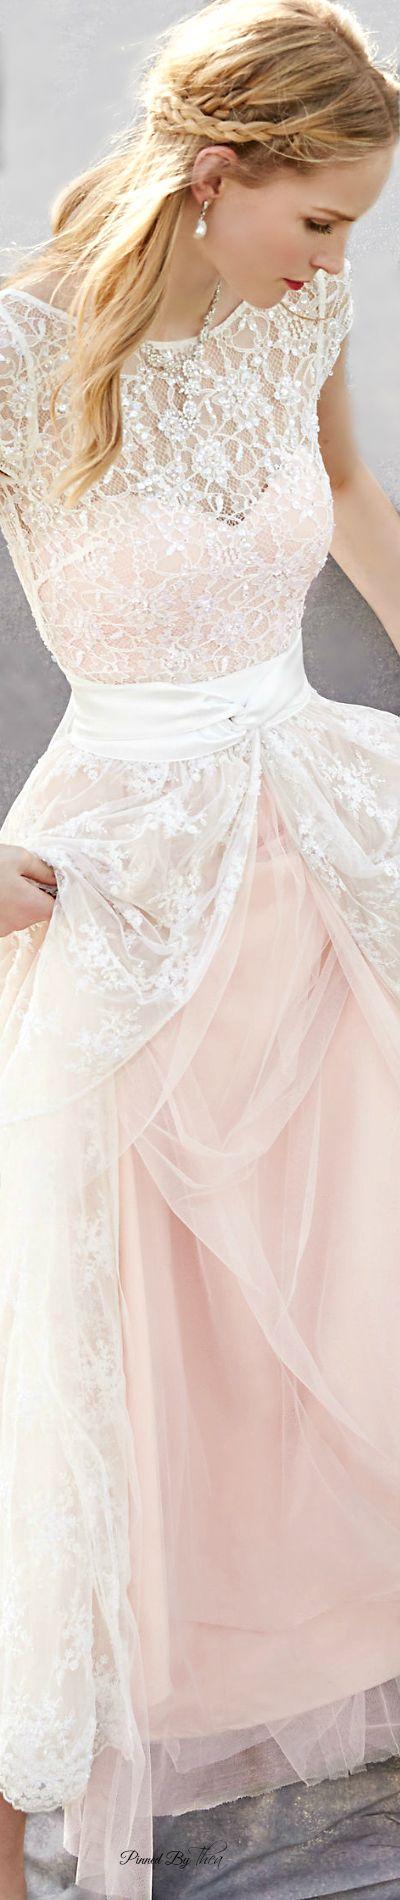 زفاف - Romantic Dress for Wedding